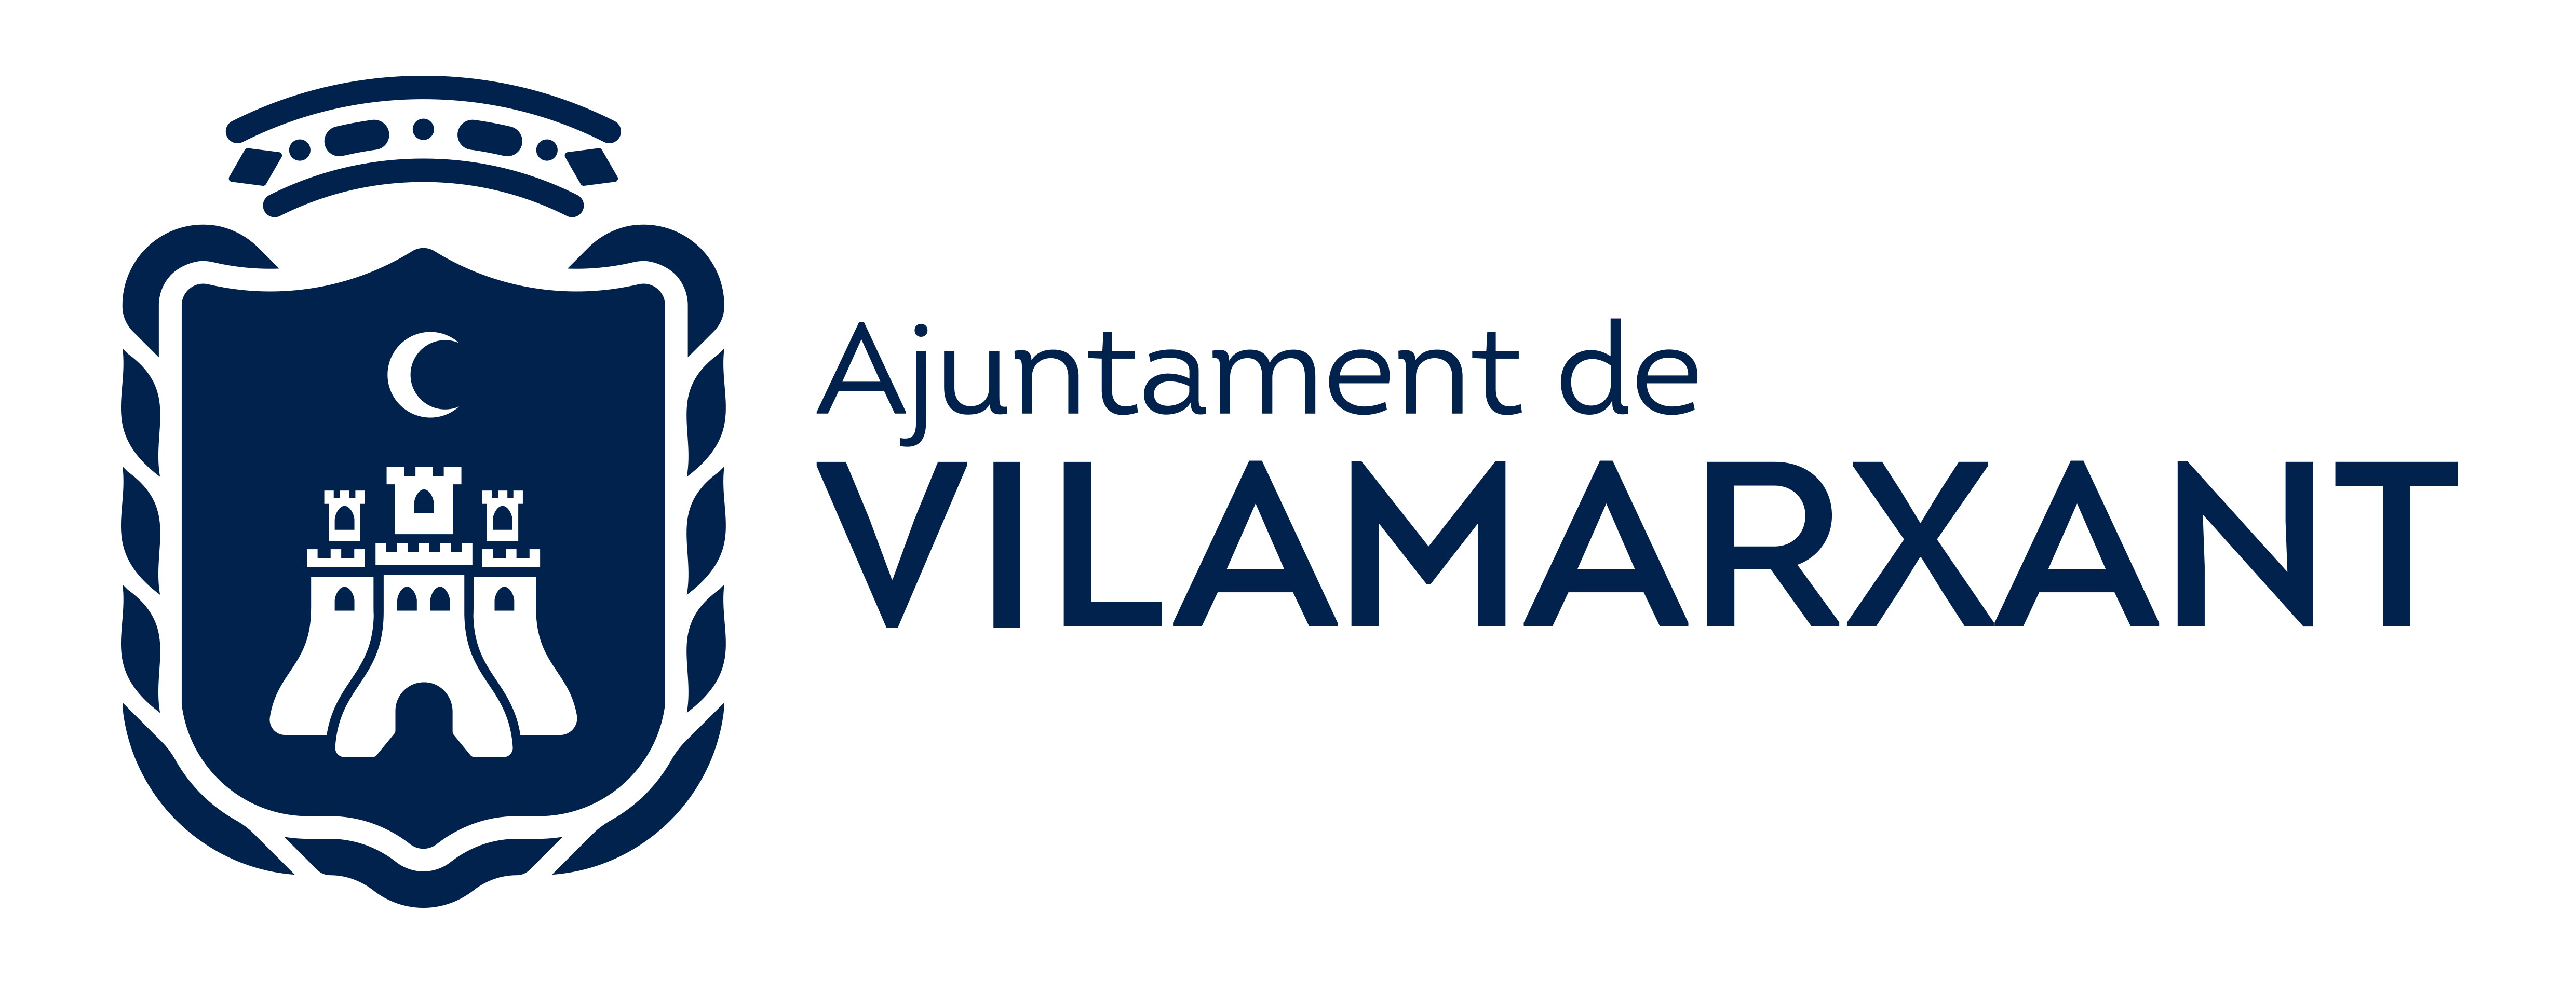 Logo Ajuntament Vilamarxant.